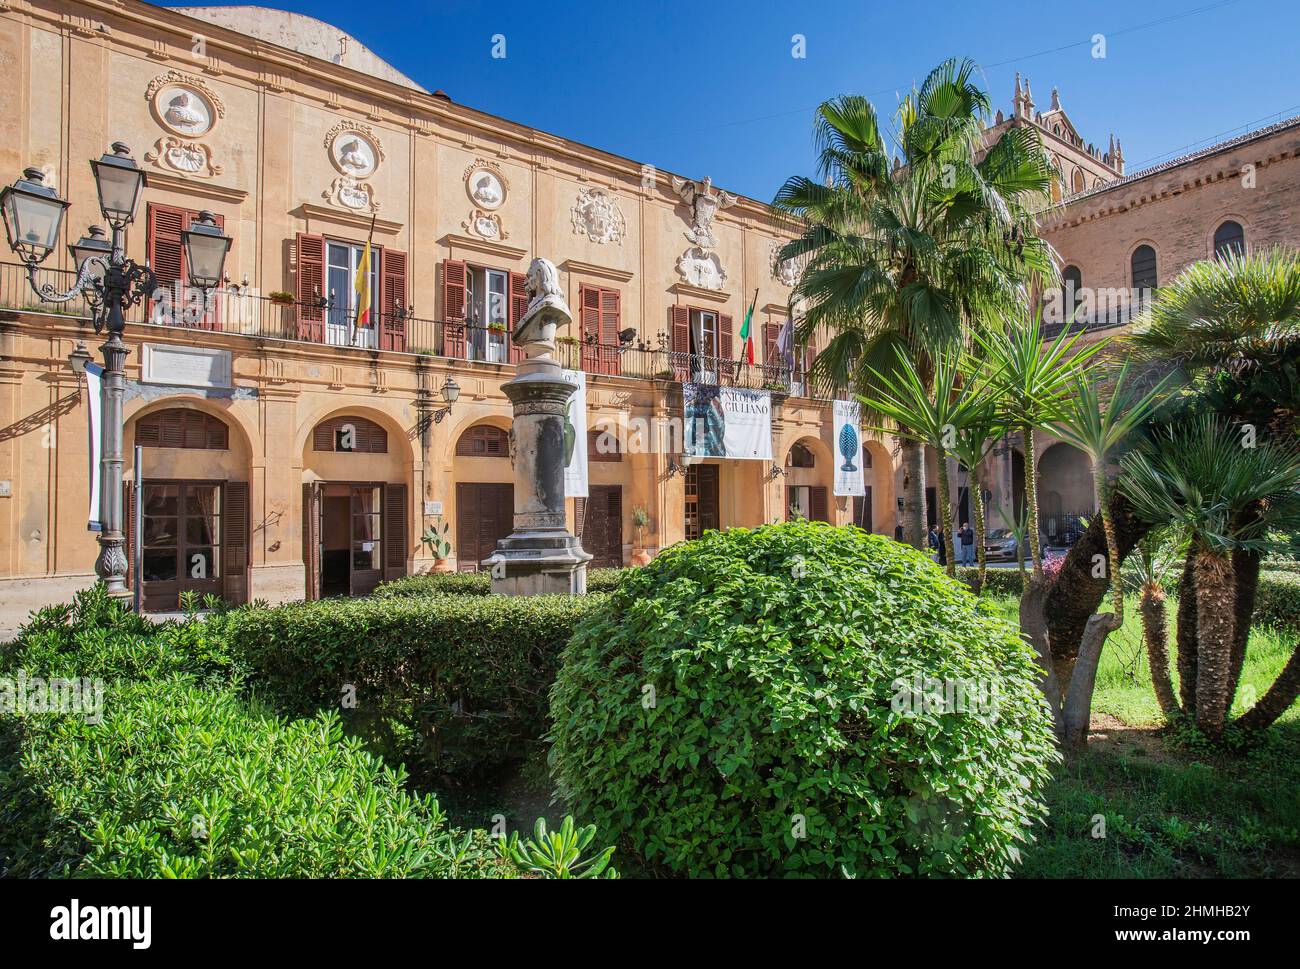 Piazza Vittorio Emanuele con el ayuntamiento en el centro, Monreale, Sicilia, Italia Foto de stock